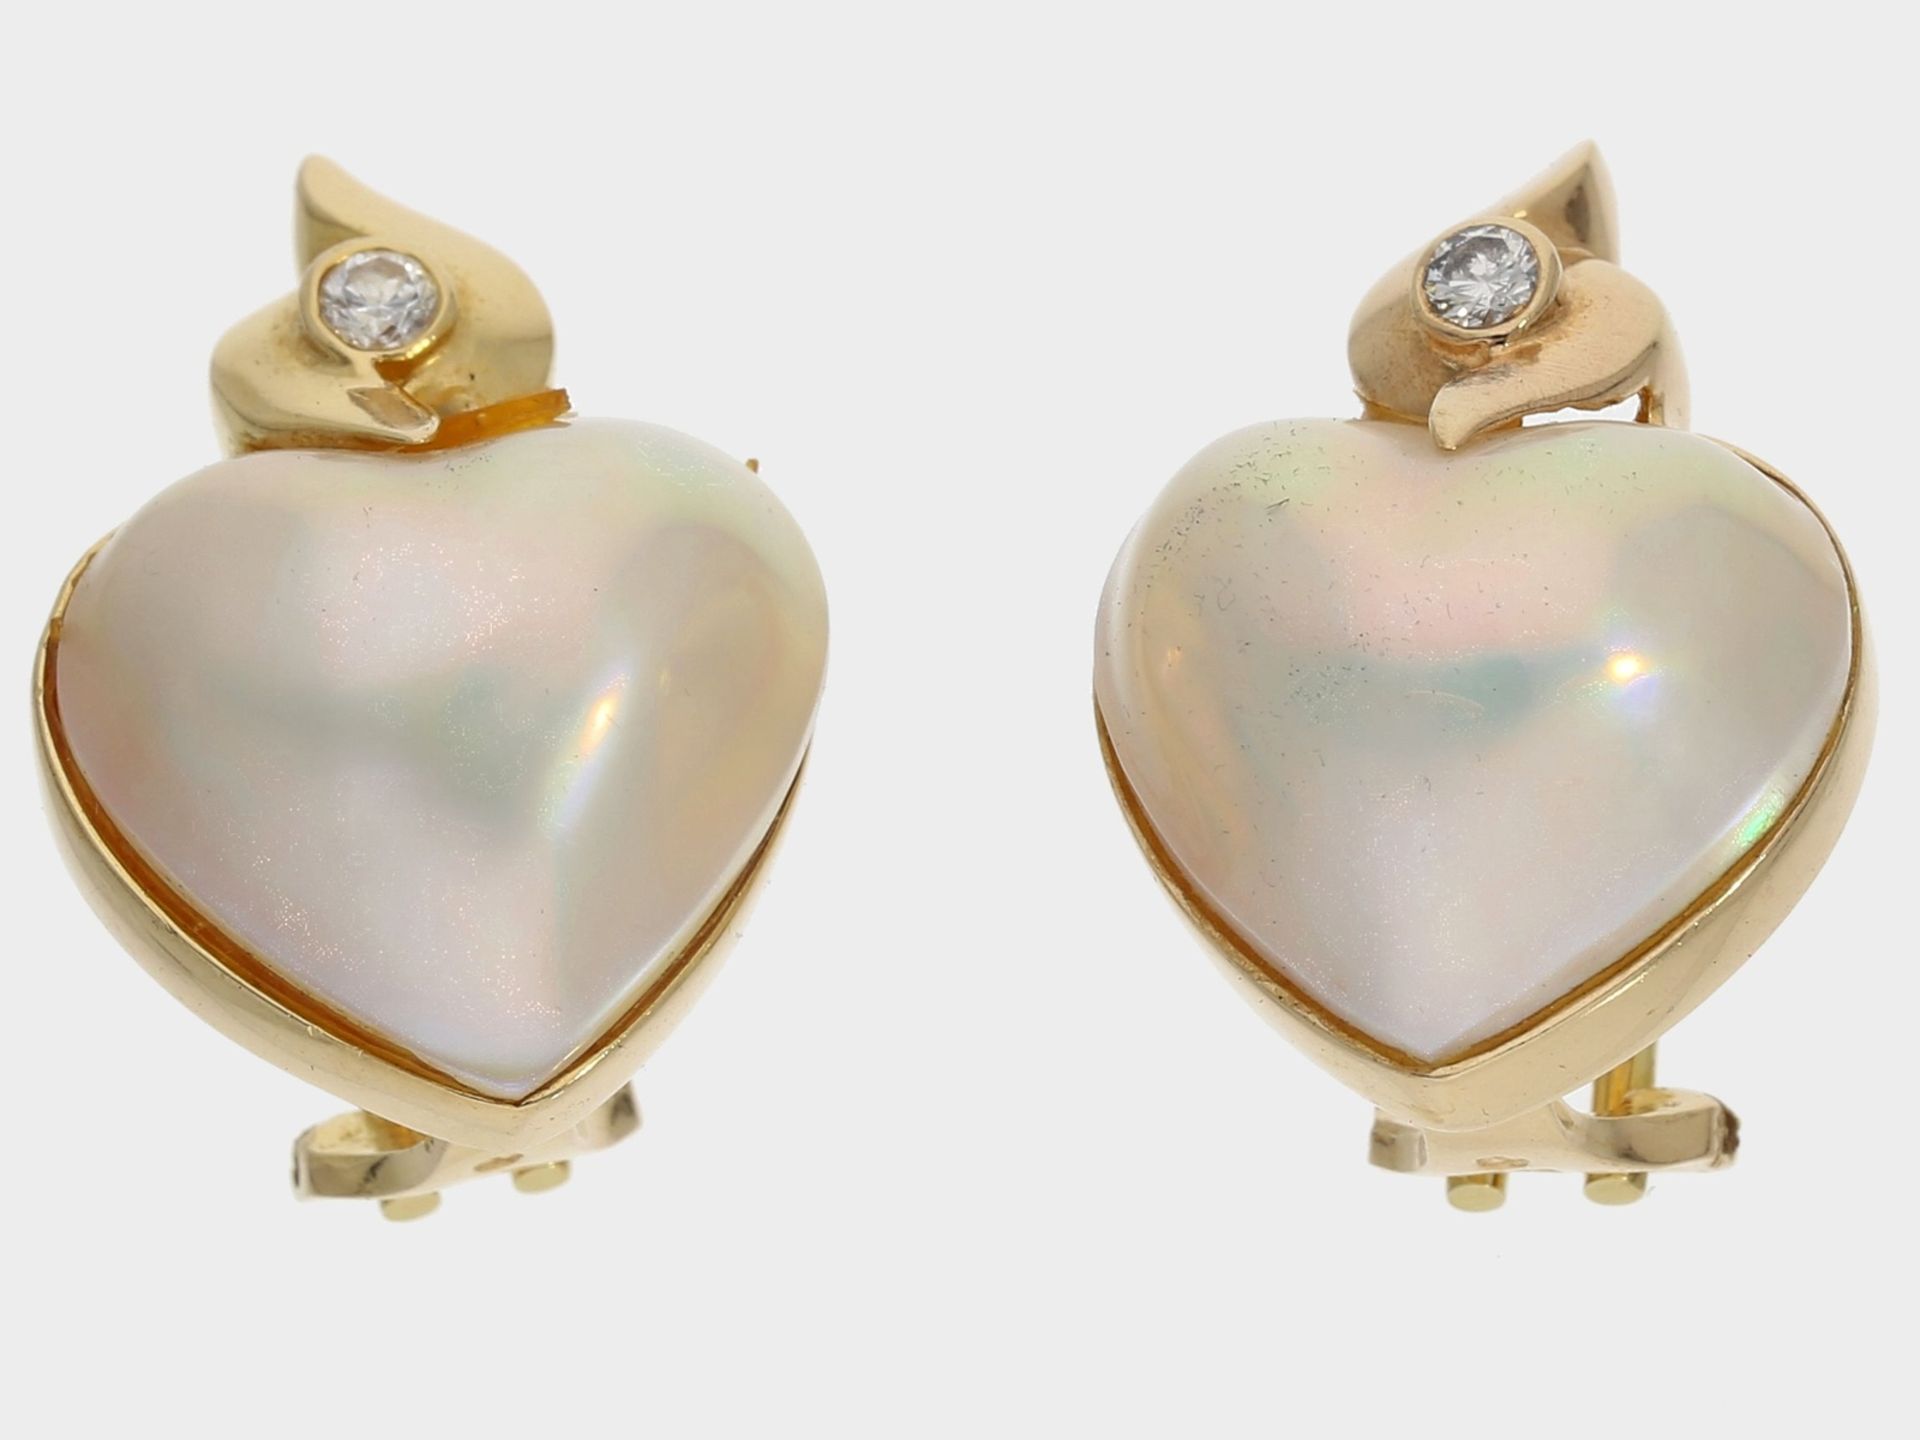 Ohrschmuck: attraktive Herzohrclips mit Brillanten und Mabeperlen, 14K Gold